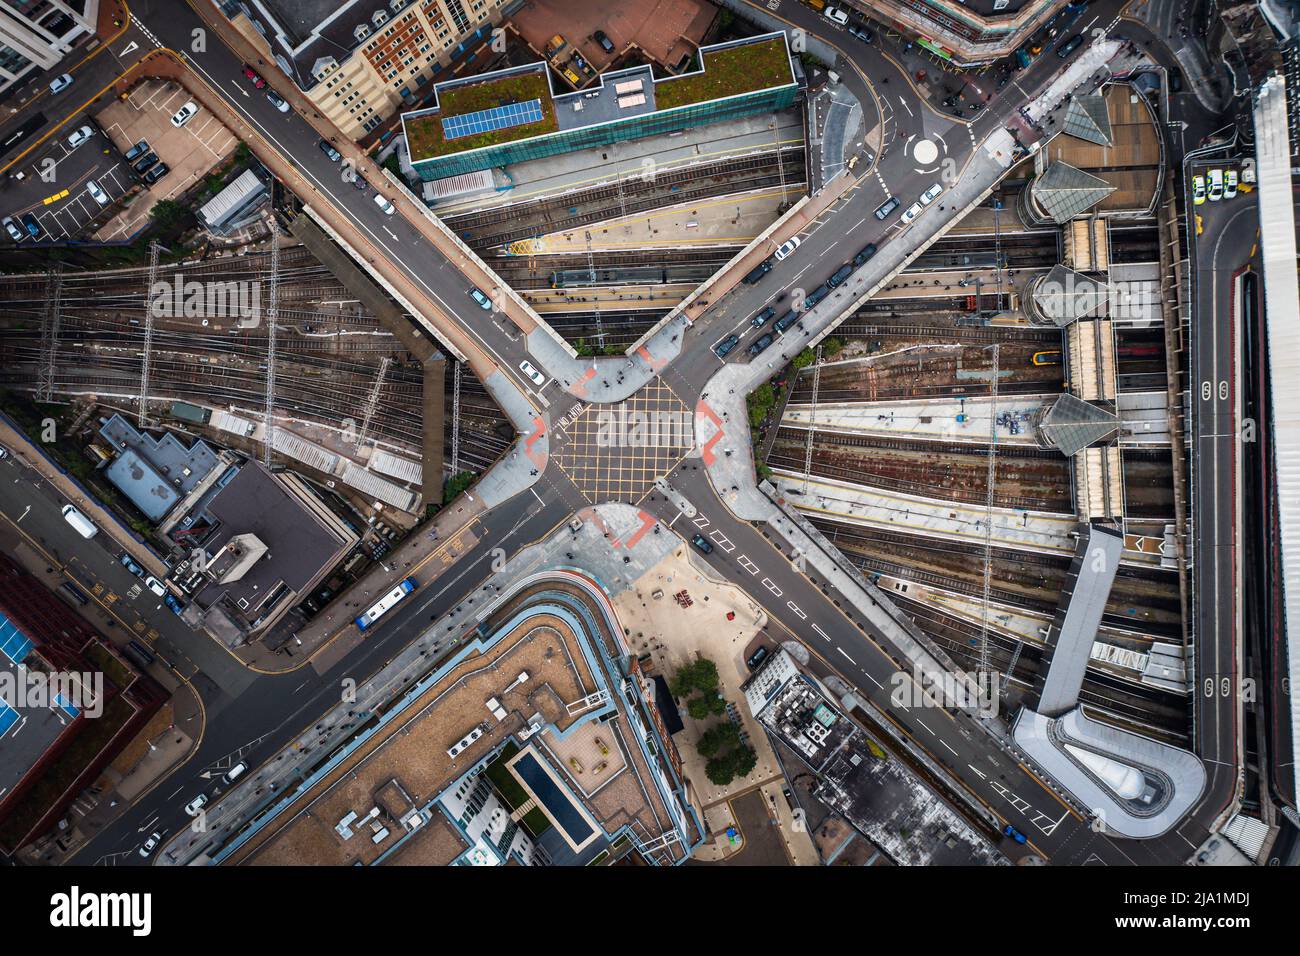 Ein Luftbild direkt über einer städtischen Metropole mit Kreuzung über vielbefahrene Eisenbahn- und U-Bahn-Schienen Stockfoto